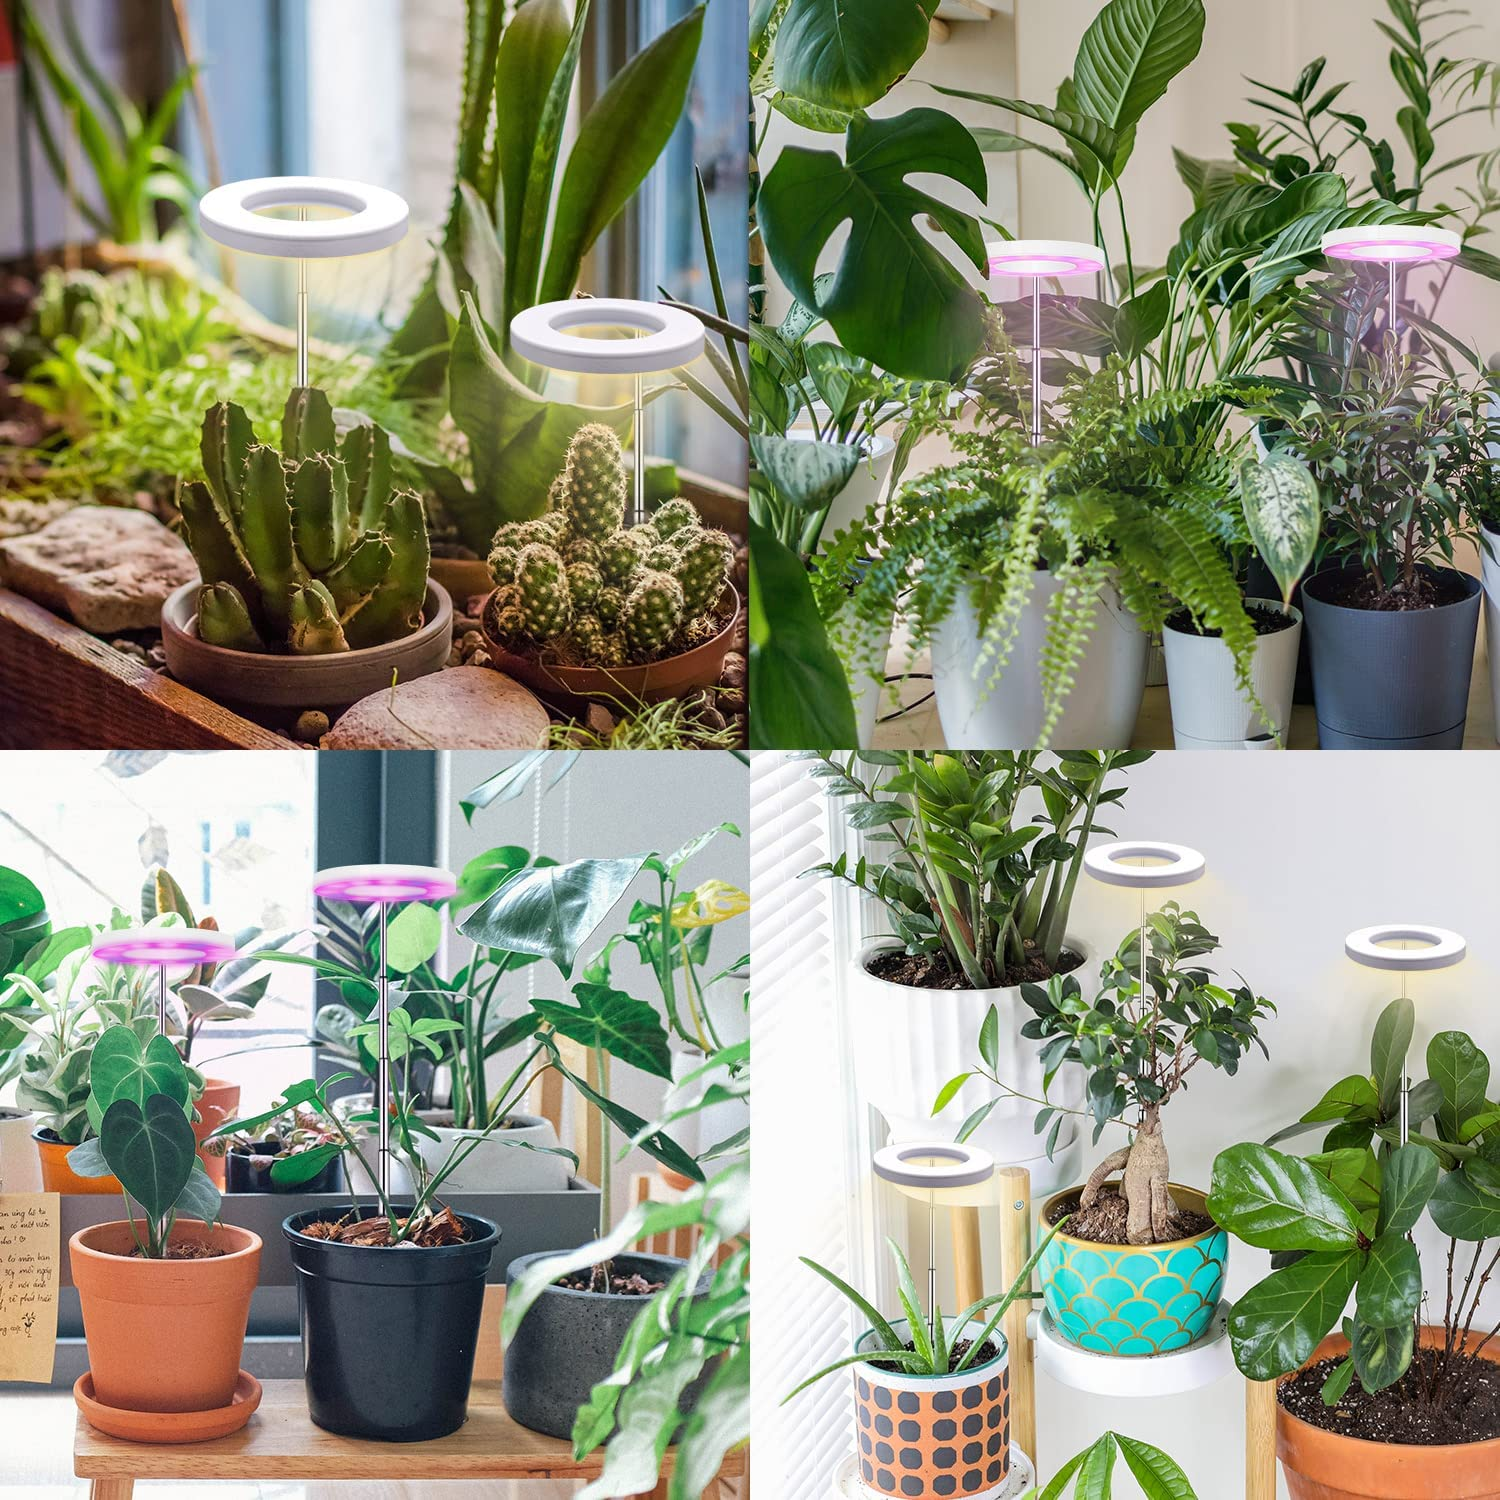 INF Kulturlampe Pflanzenbeleuchtung für Topfpflanzen warmweiß/weiß Pflanzenlampe